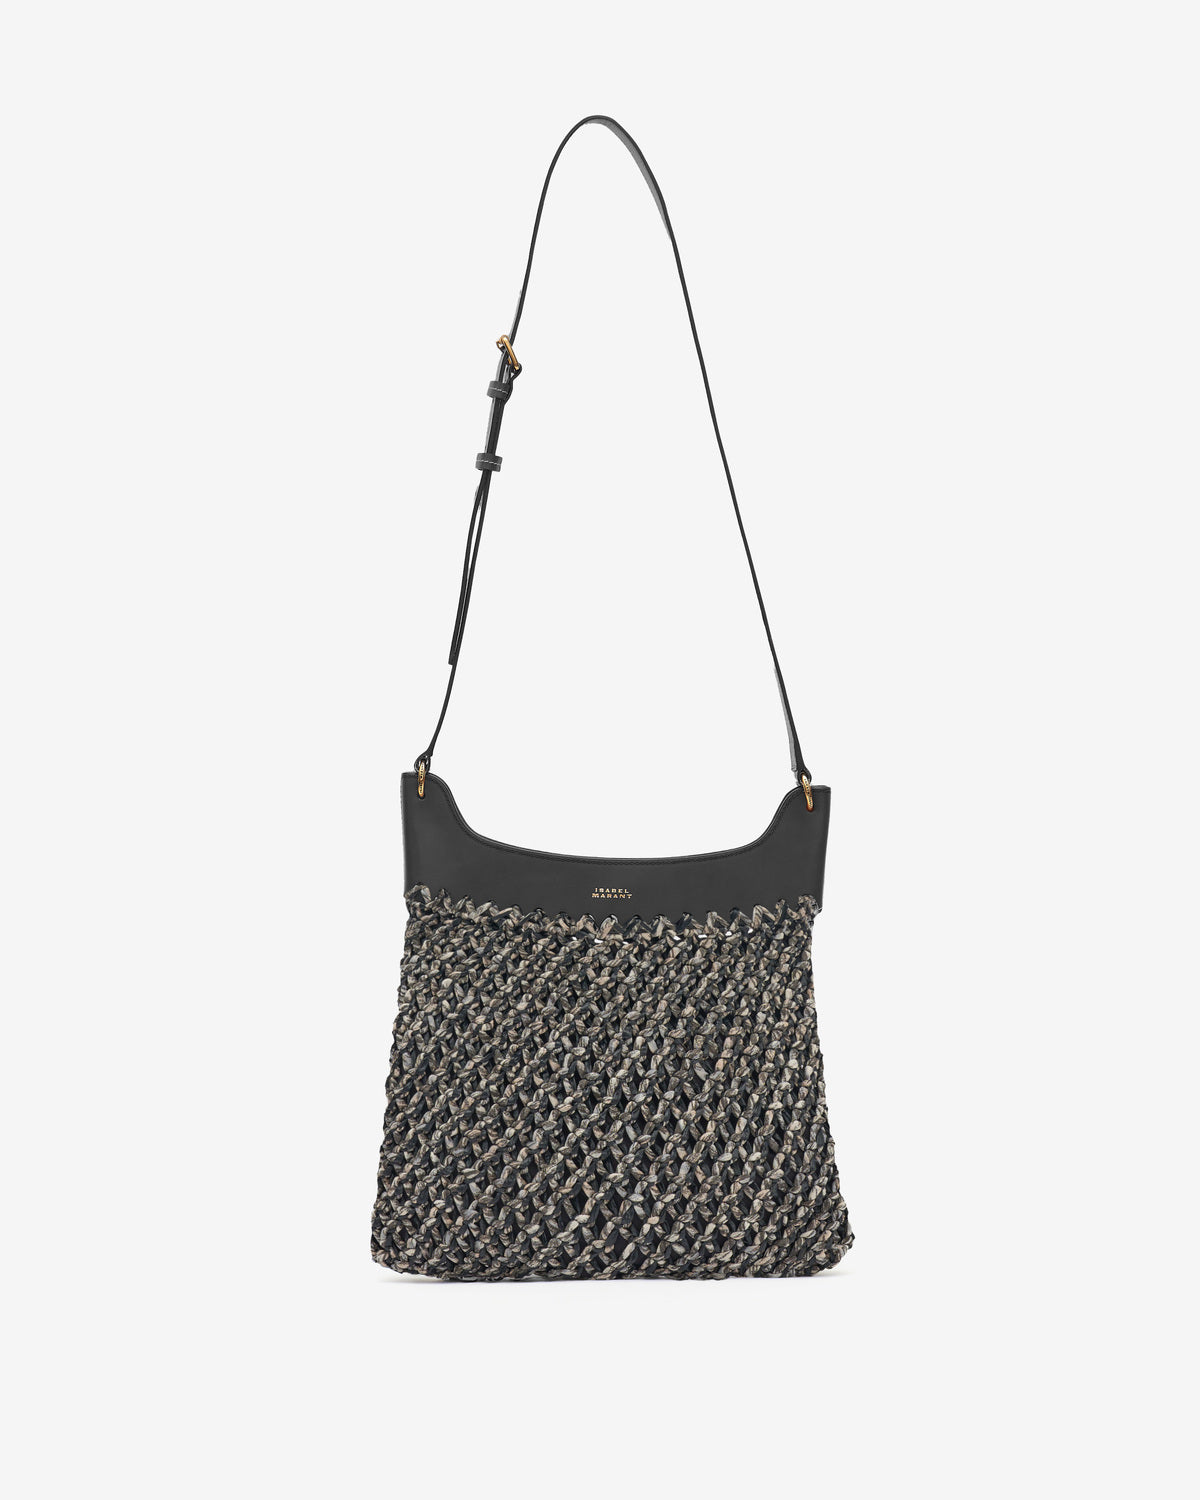 Amalfi hand-woven bag Woman Black 5